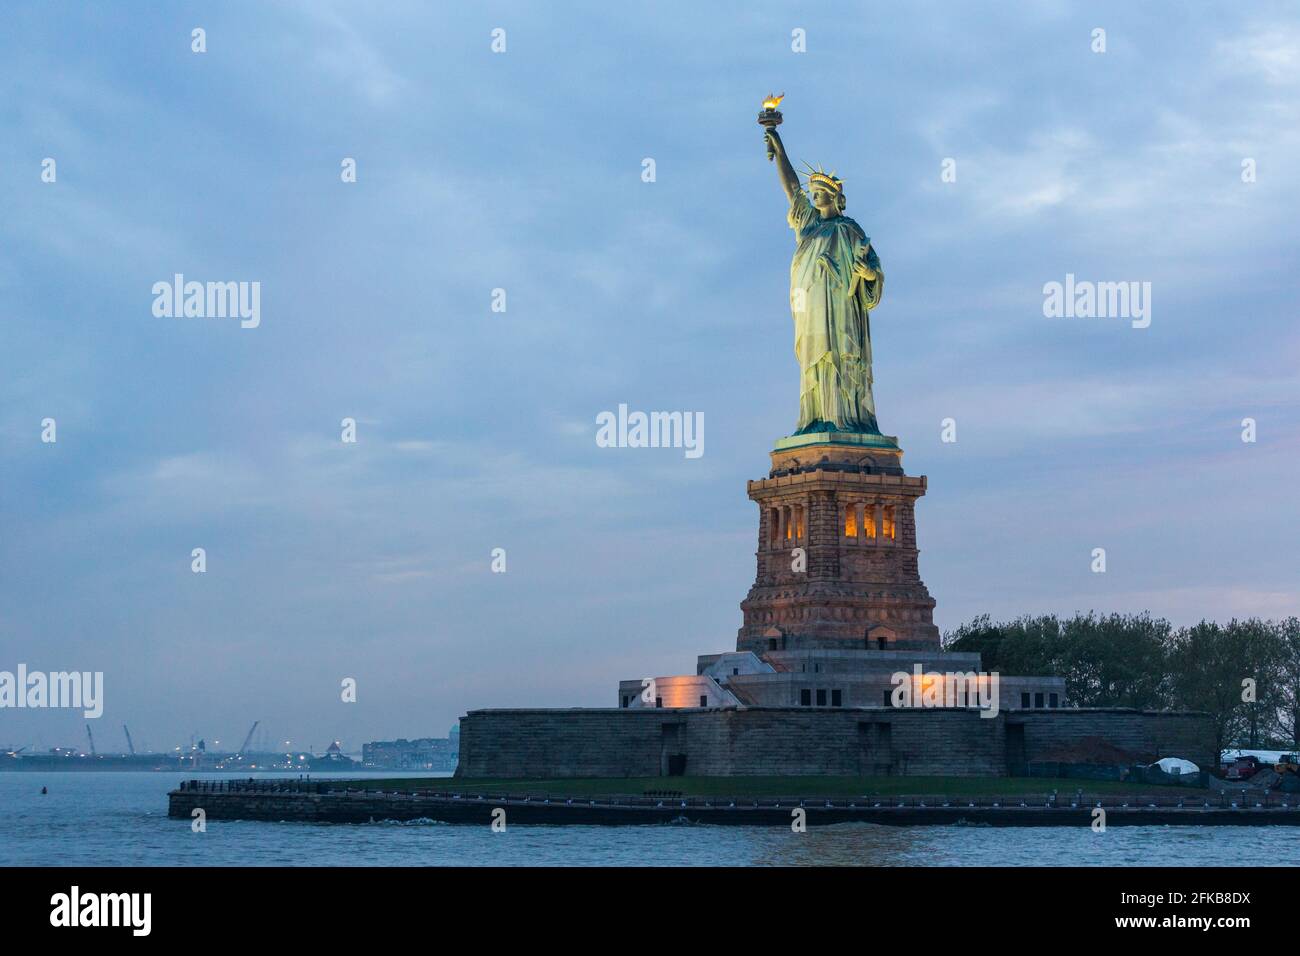 Freiheitsstatue in der Dämmerung, New York City, USA Stockfoto